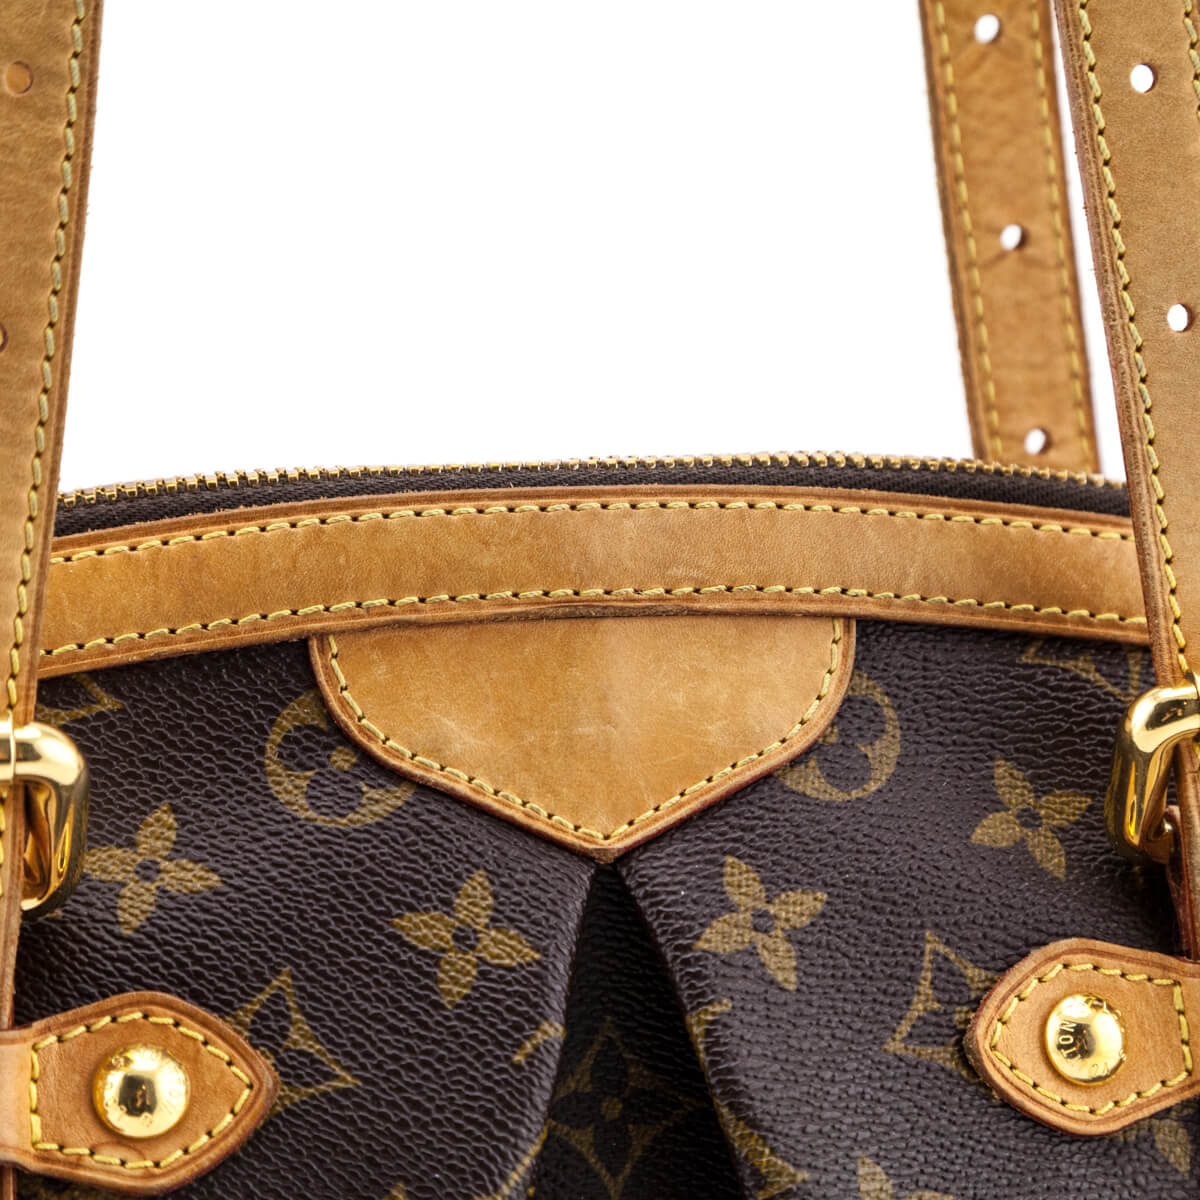 Louis Vuitton Monogram Tivoli GM - Shop Louis Vuitton Handbags Canada